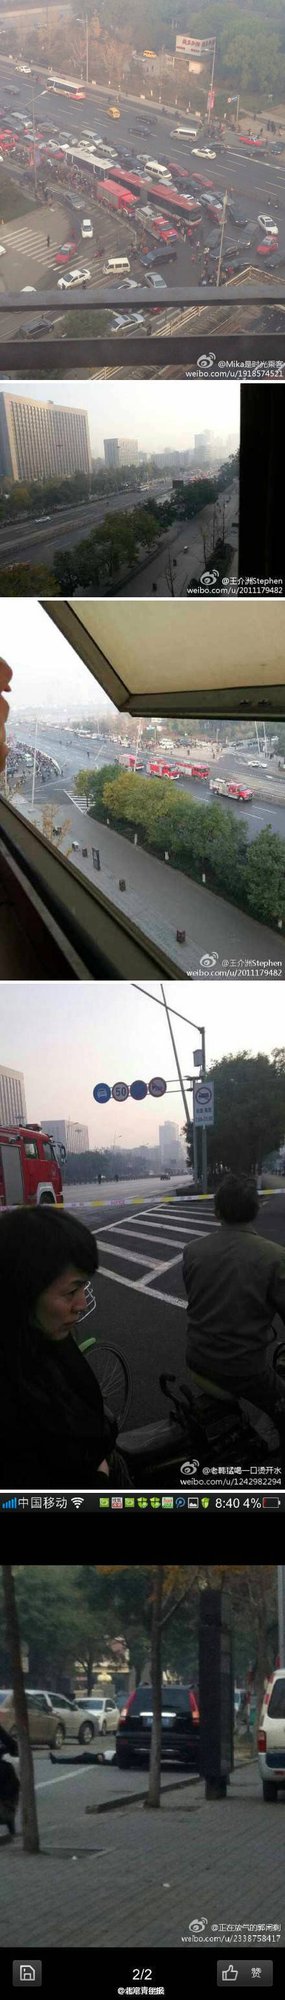 高清图—迎泽大街山西省委连环爆炸 伤亡不详